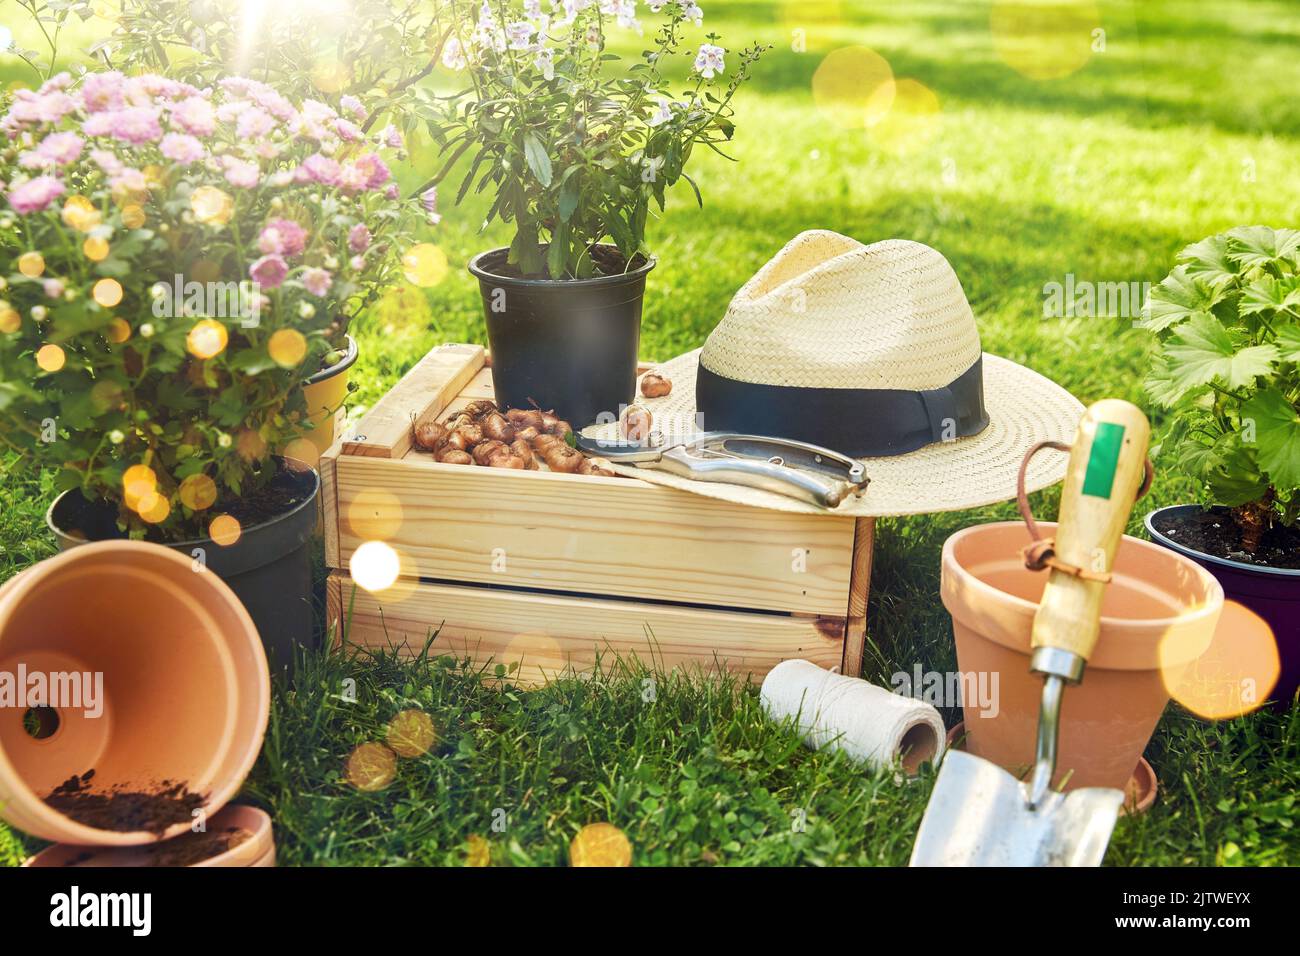 herramientas de jardín, caja de madera y flores en verano Foto de stock